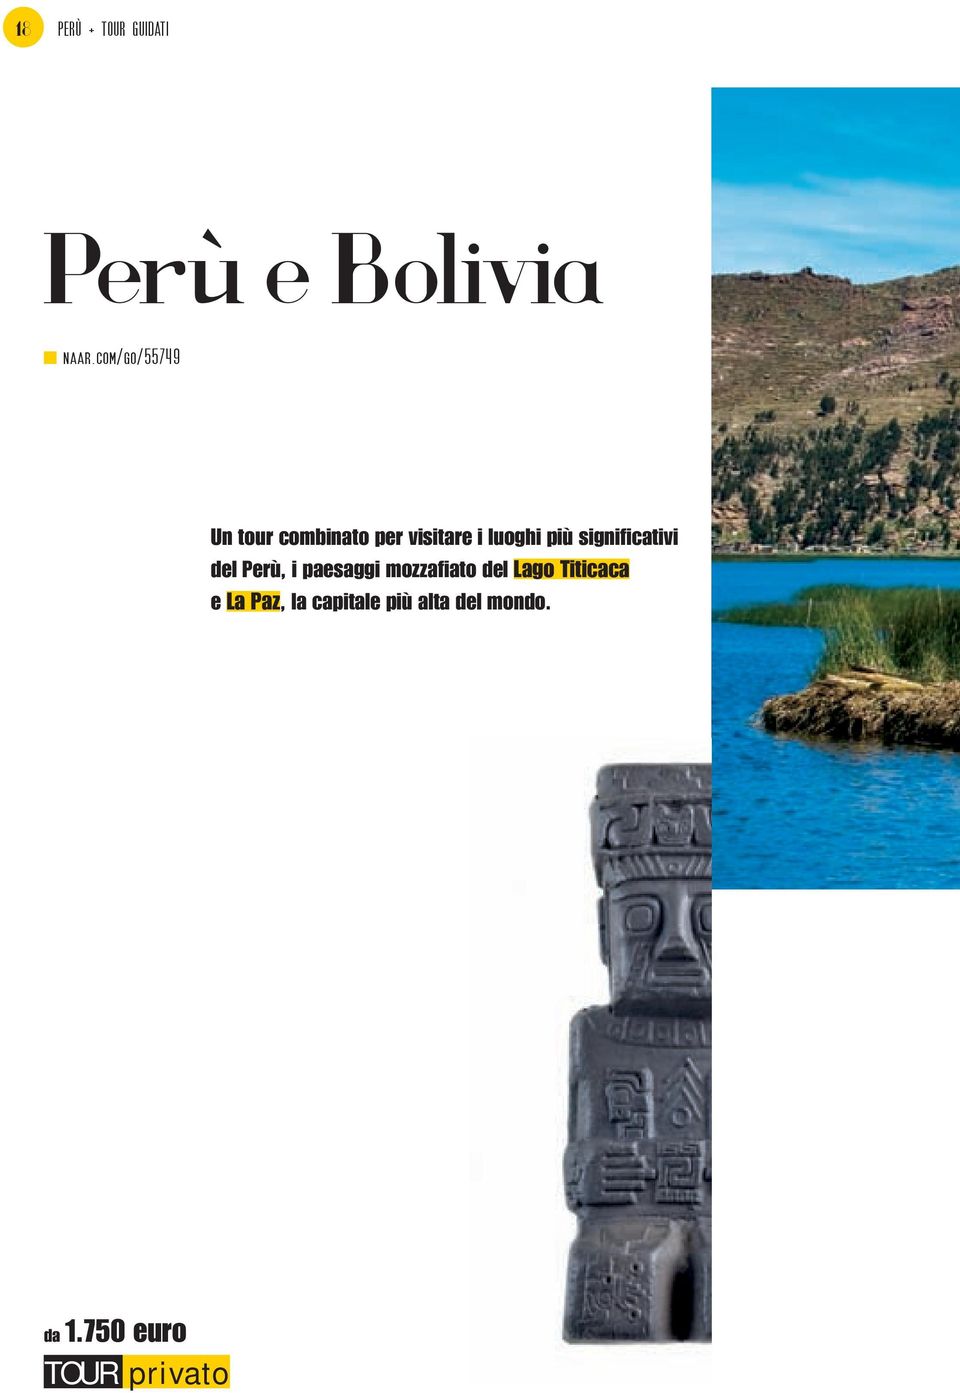 significativi del Perù, i paesaggi mozzafiato del Lago